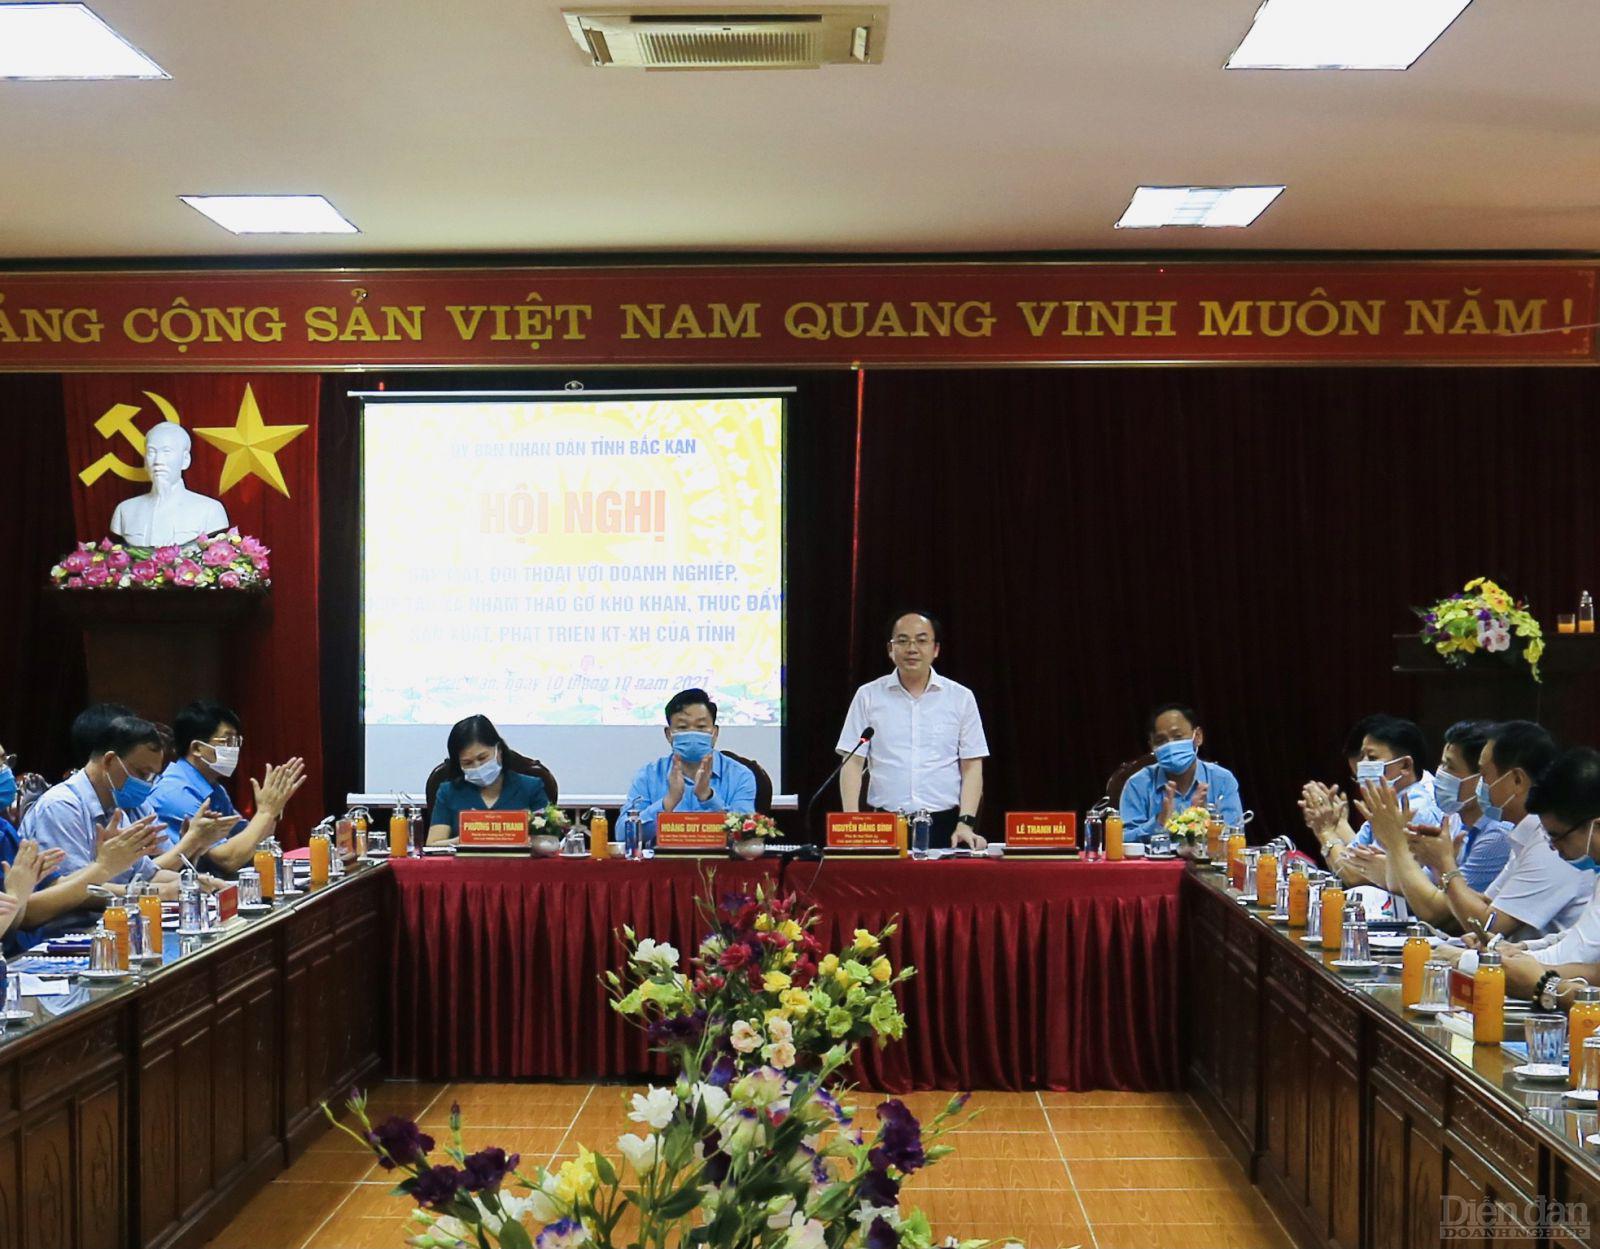 Chủ tịch UBND tỉnh ông Nguyễn Đăng Bình Hội nghị gặp mặt, đối thoại doanh nghiệp (chiều 10/10).